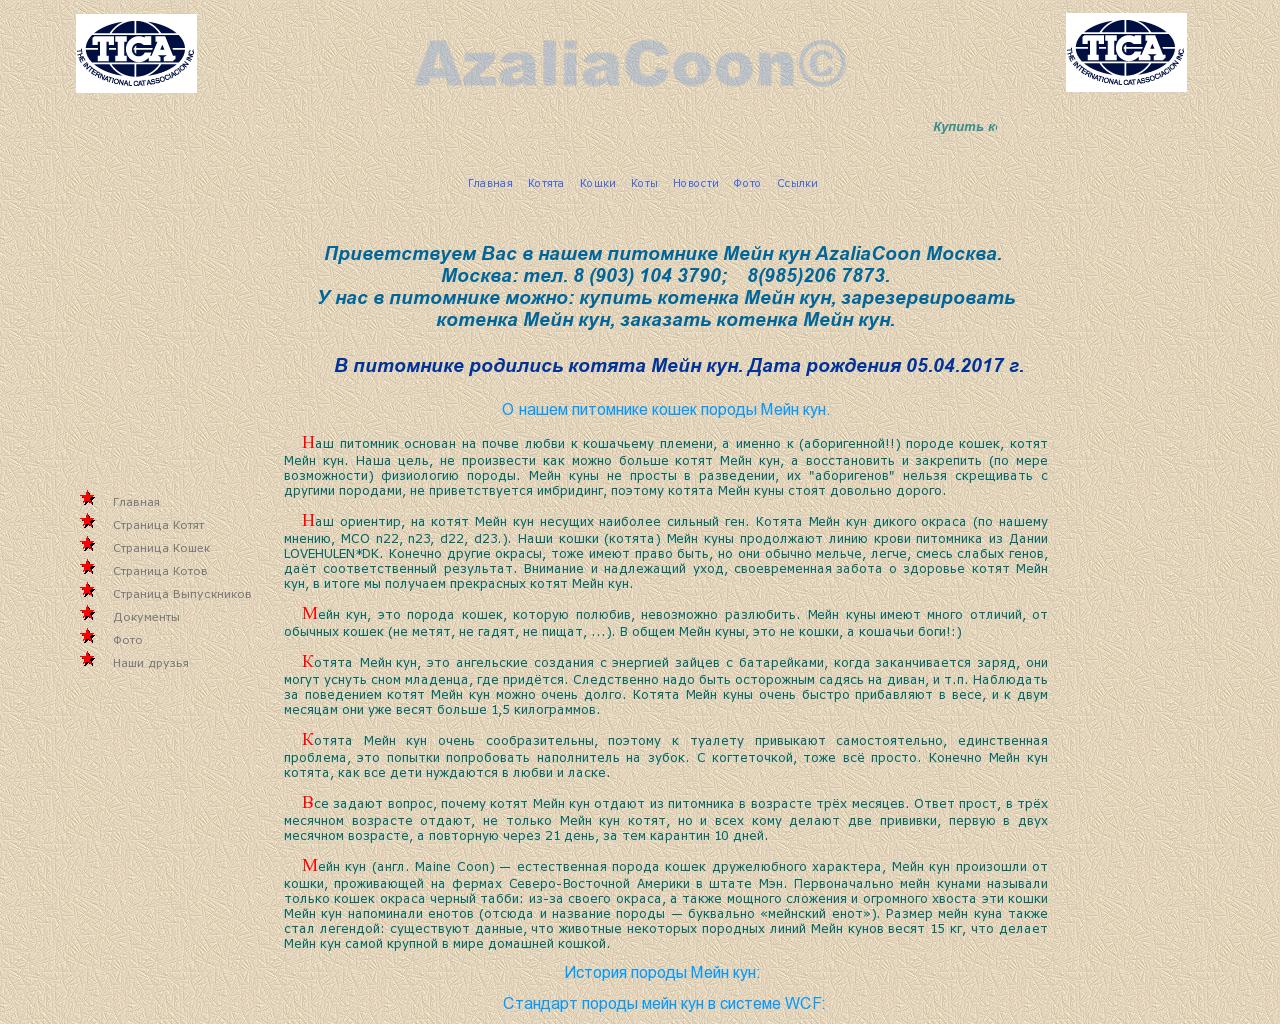 Изображение сайта azaliacoon.ru в разрешении 1280x1024